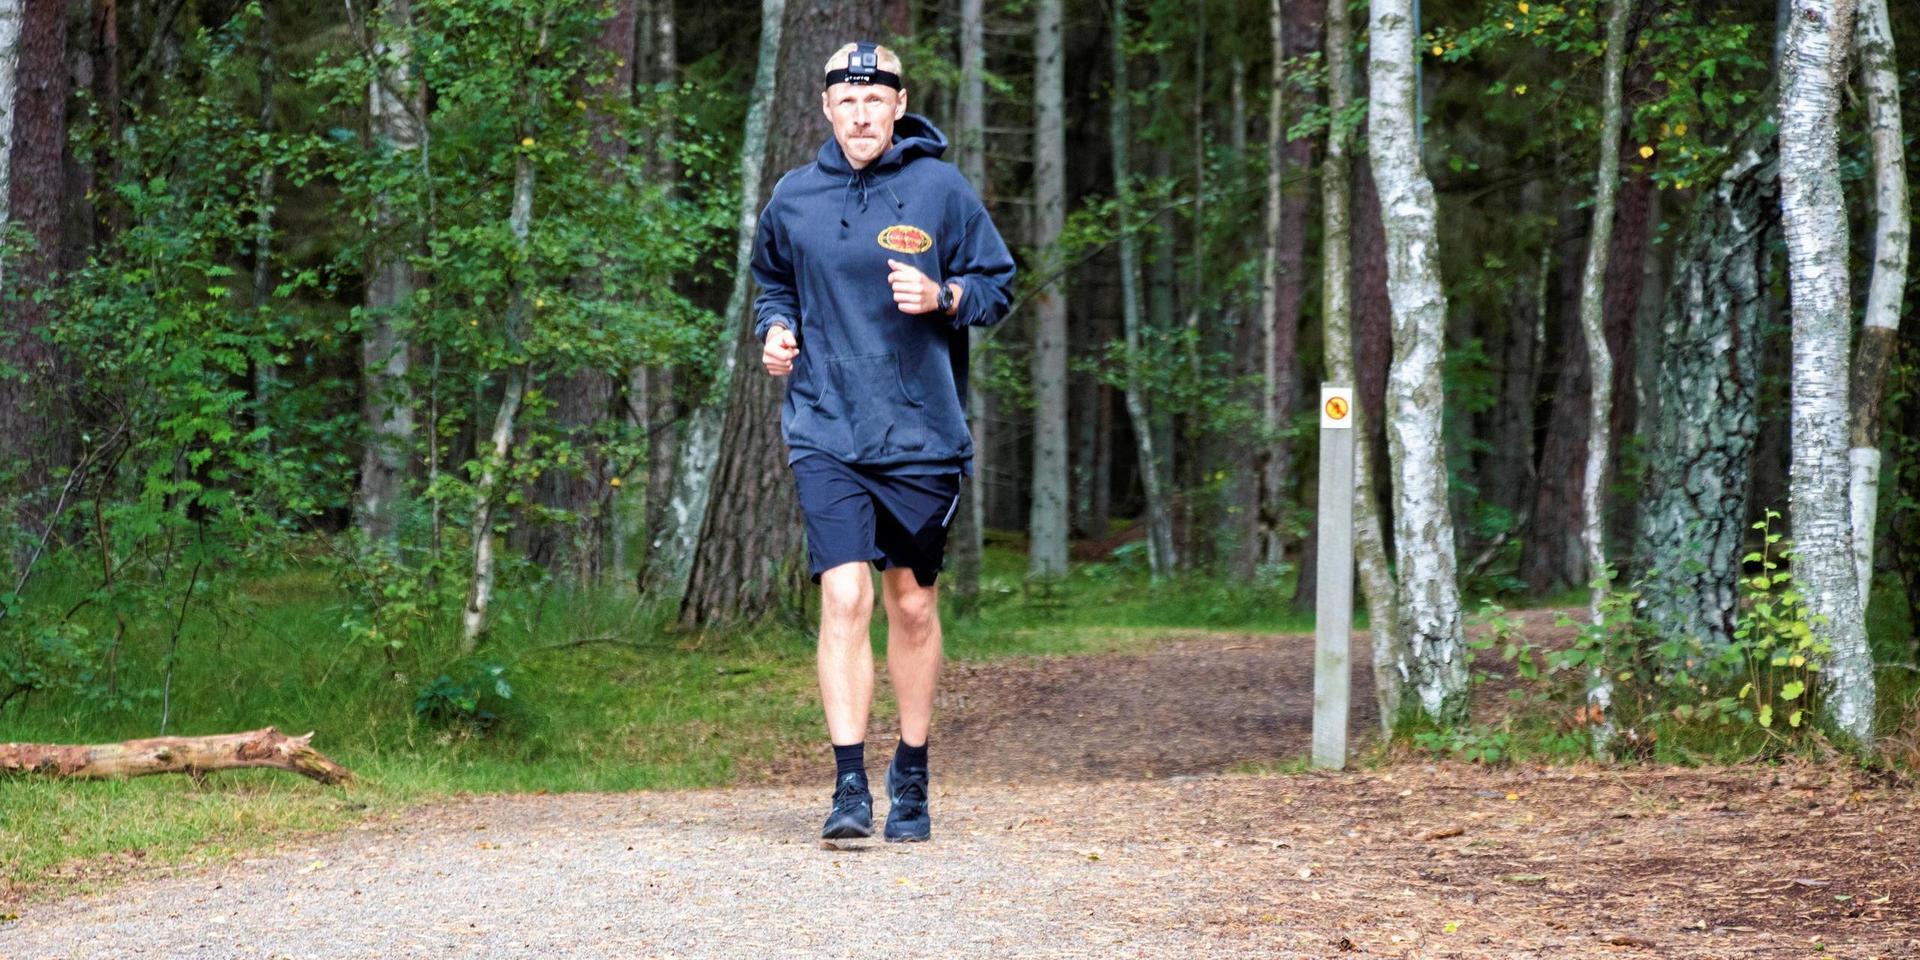 På sin resa genom Sverige stannade Erik Nylén till på Hökafältet i Laholm. Dagligen springer han tre mil på olika slingor i Sverige. I norra Sverige fick han springa sina tre mil på färre slingor på grund av långa avstånd. I södra Sverige ser han fram emot tätare motionsspår.